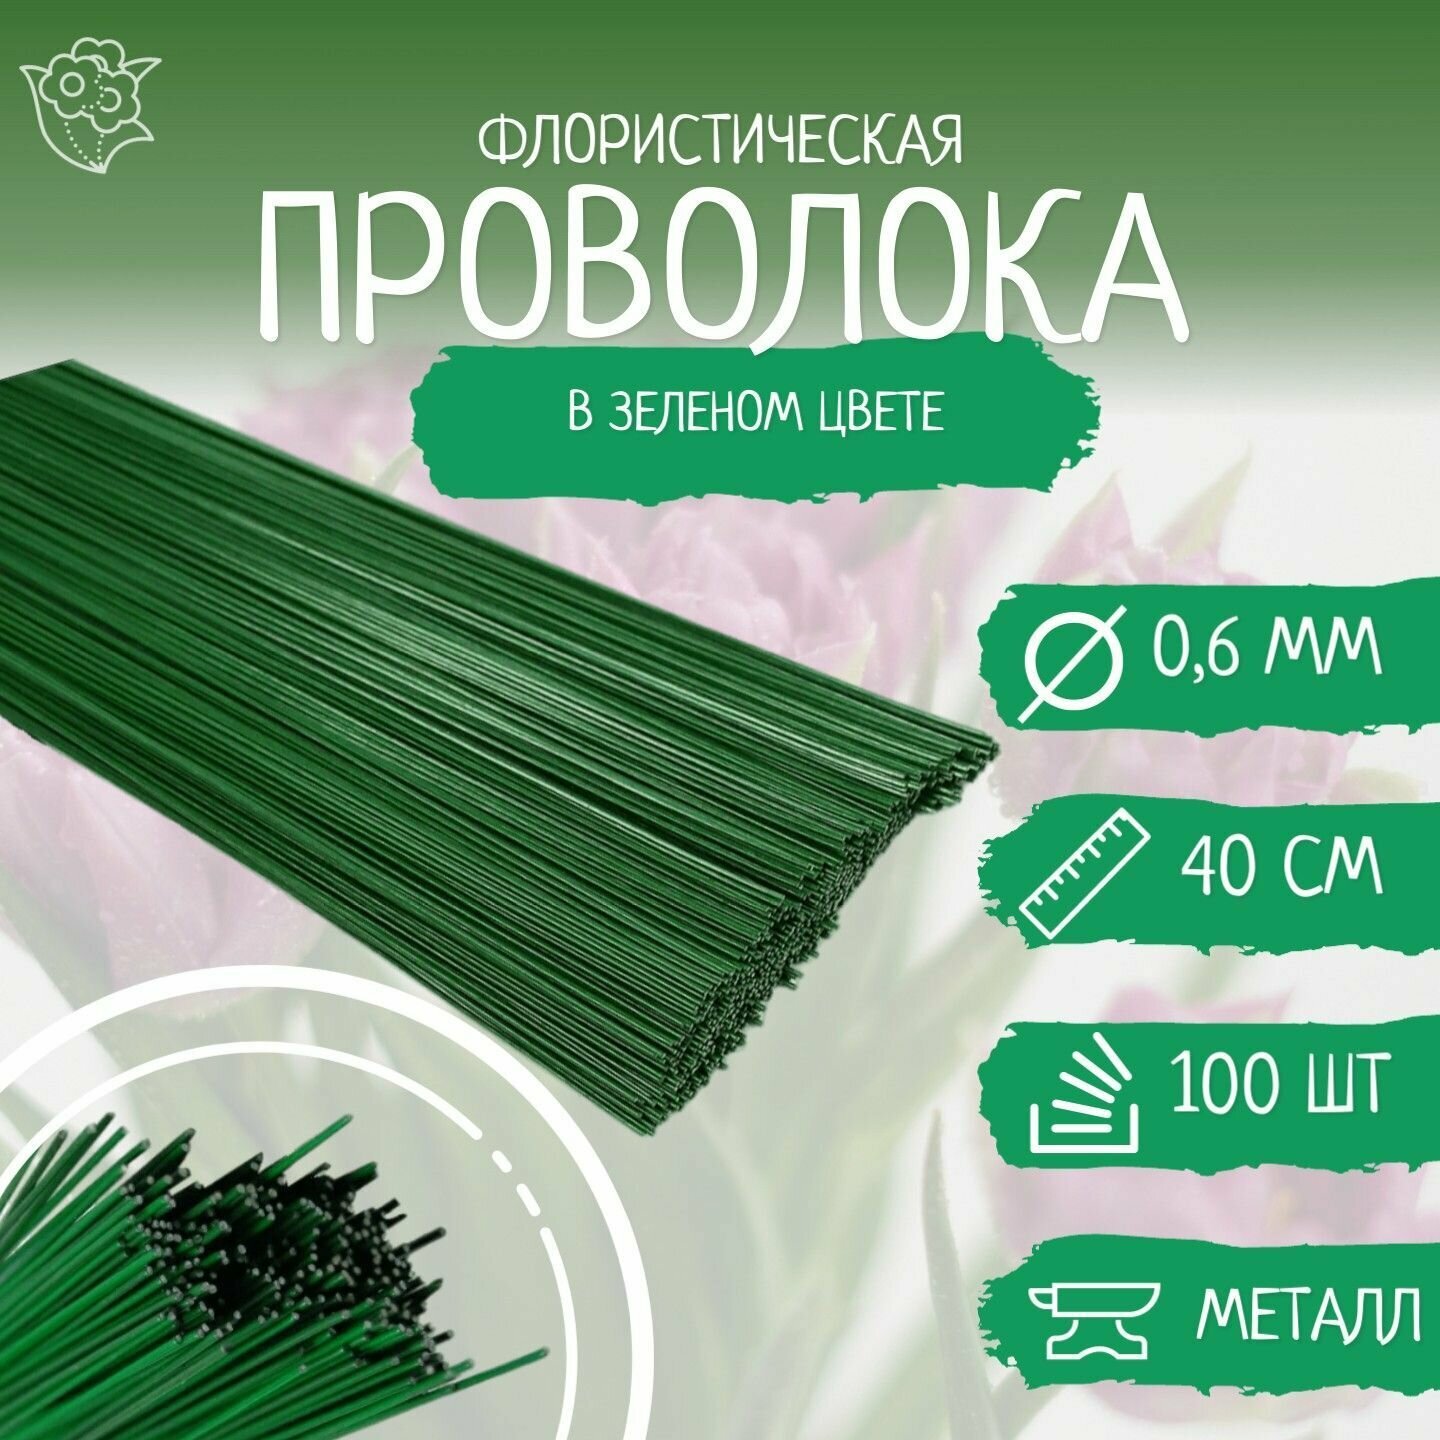 Проволока флористическая зелёная - 0.6 мм. * 40 см. 50 штук.